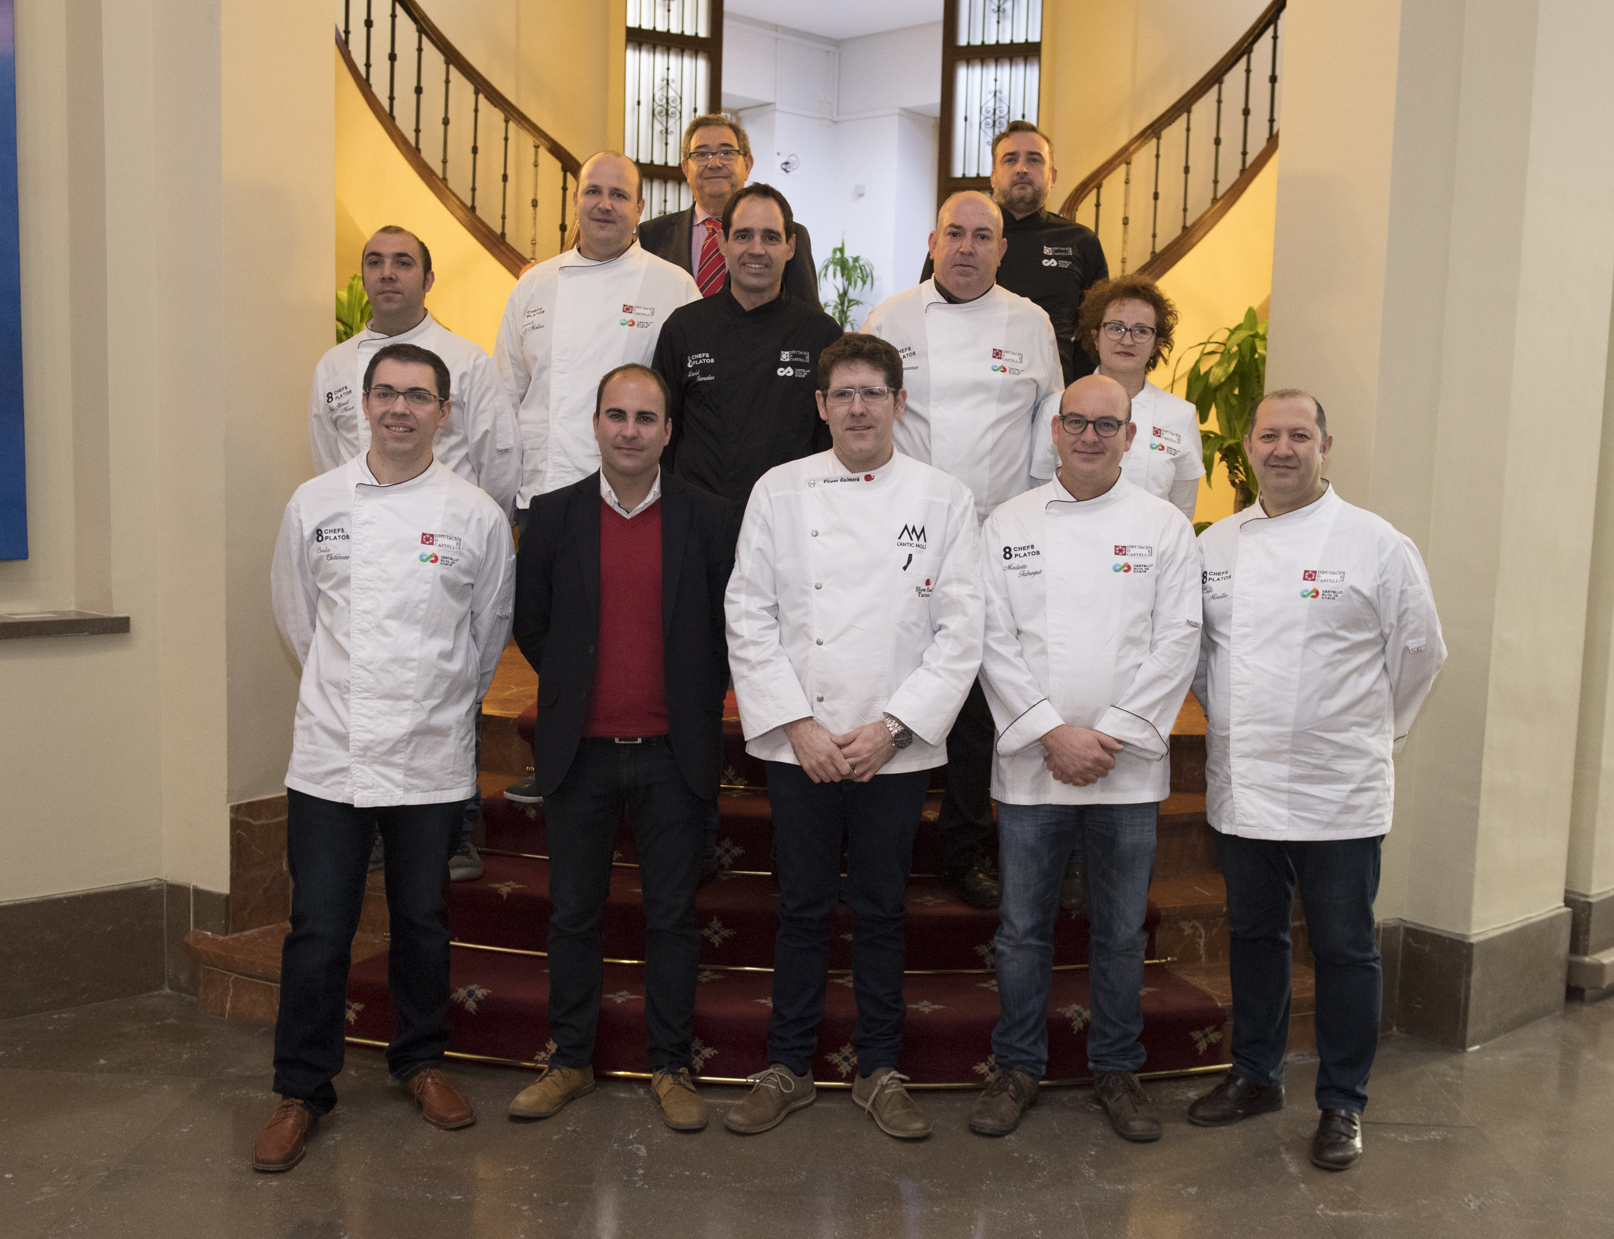 Castelló Ruta de Sabor pondrá en valor la gastronomía provincial a través de ‘8 chefs 8 platos’